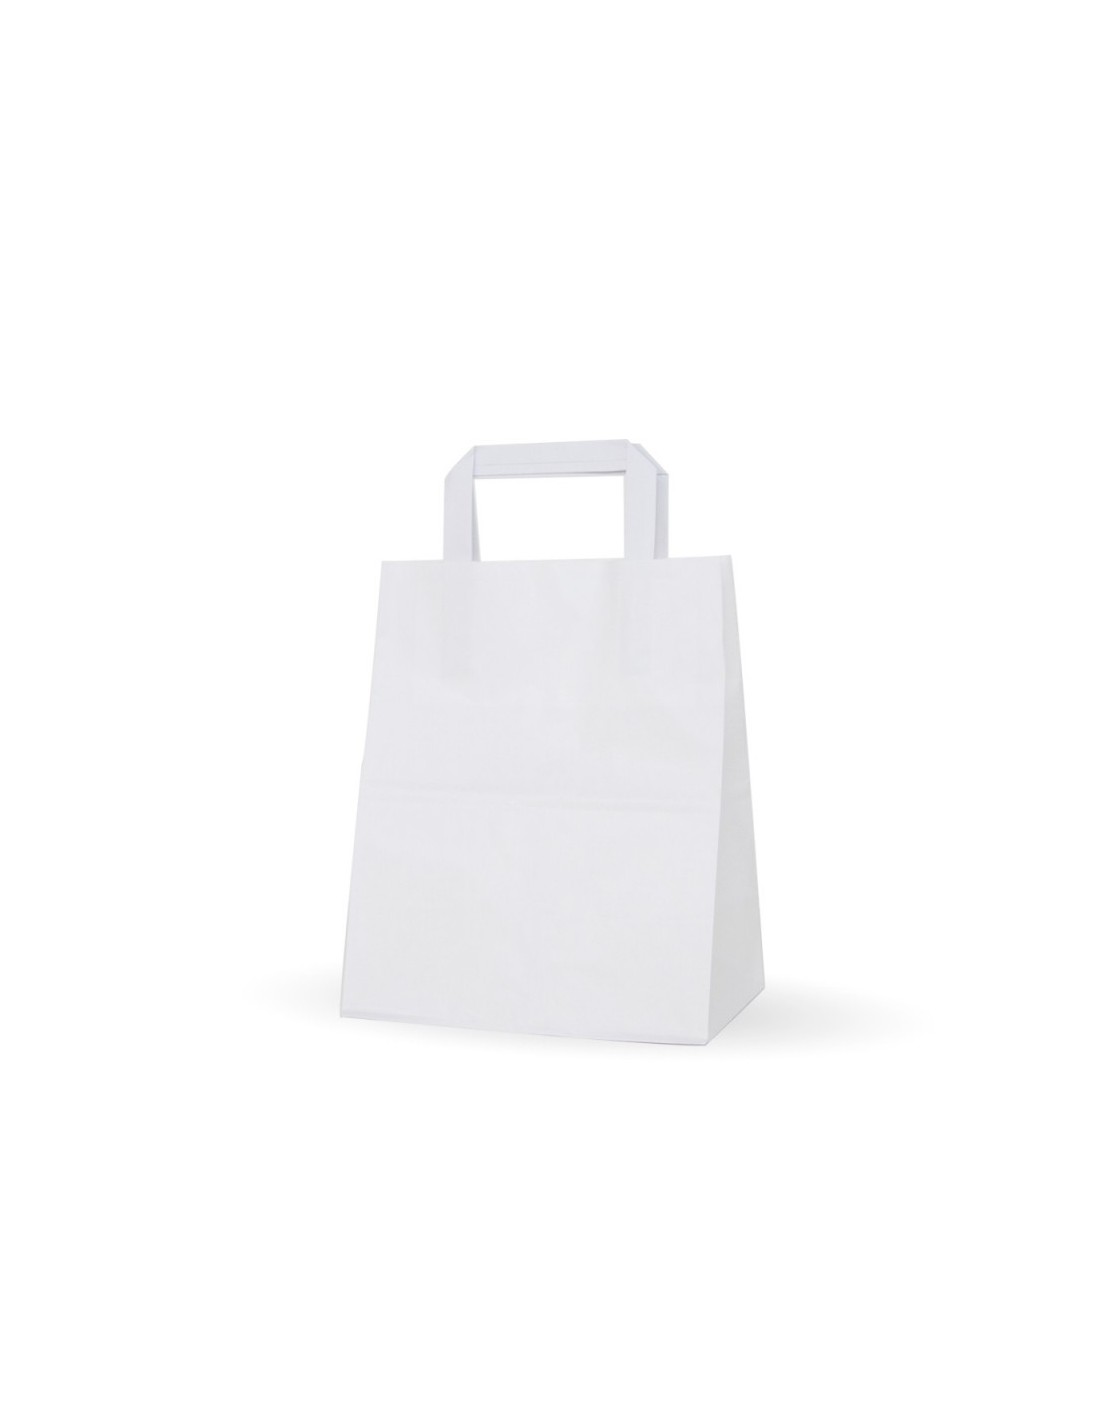 Bolsa Plastico Blanca 35x40 cm troquelada, 100 ud 8,90 € envío en 24 hs